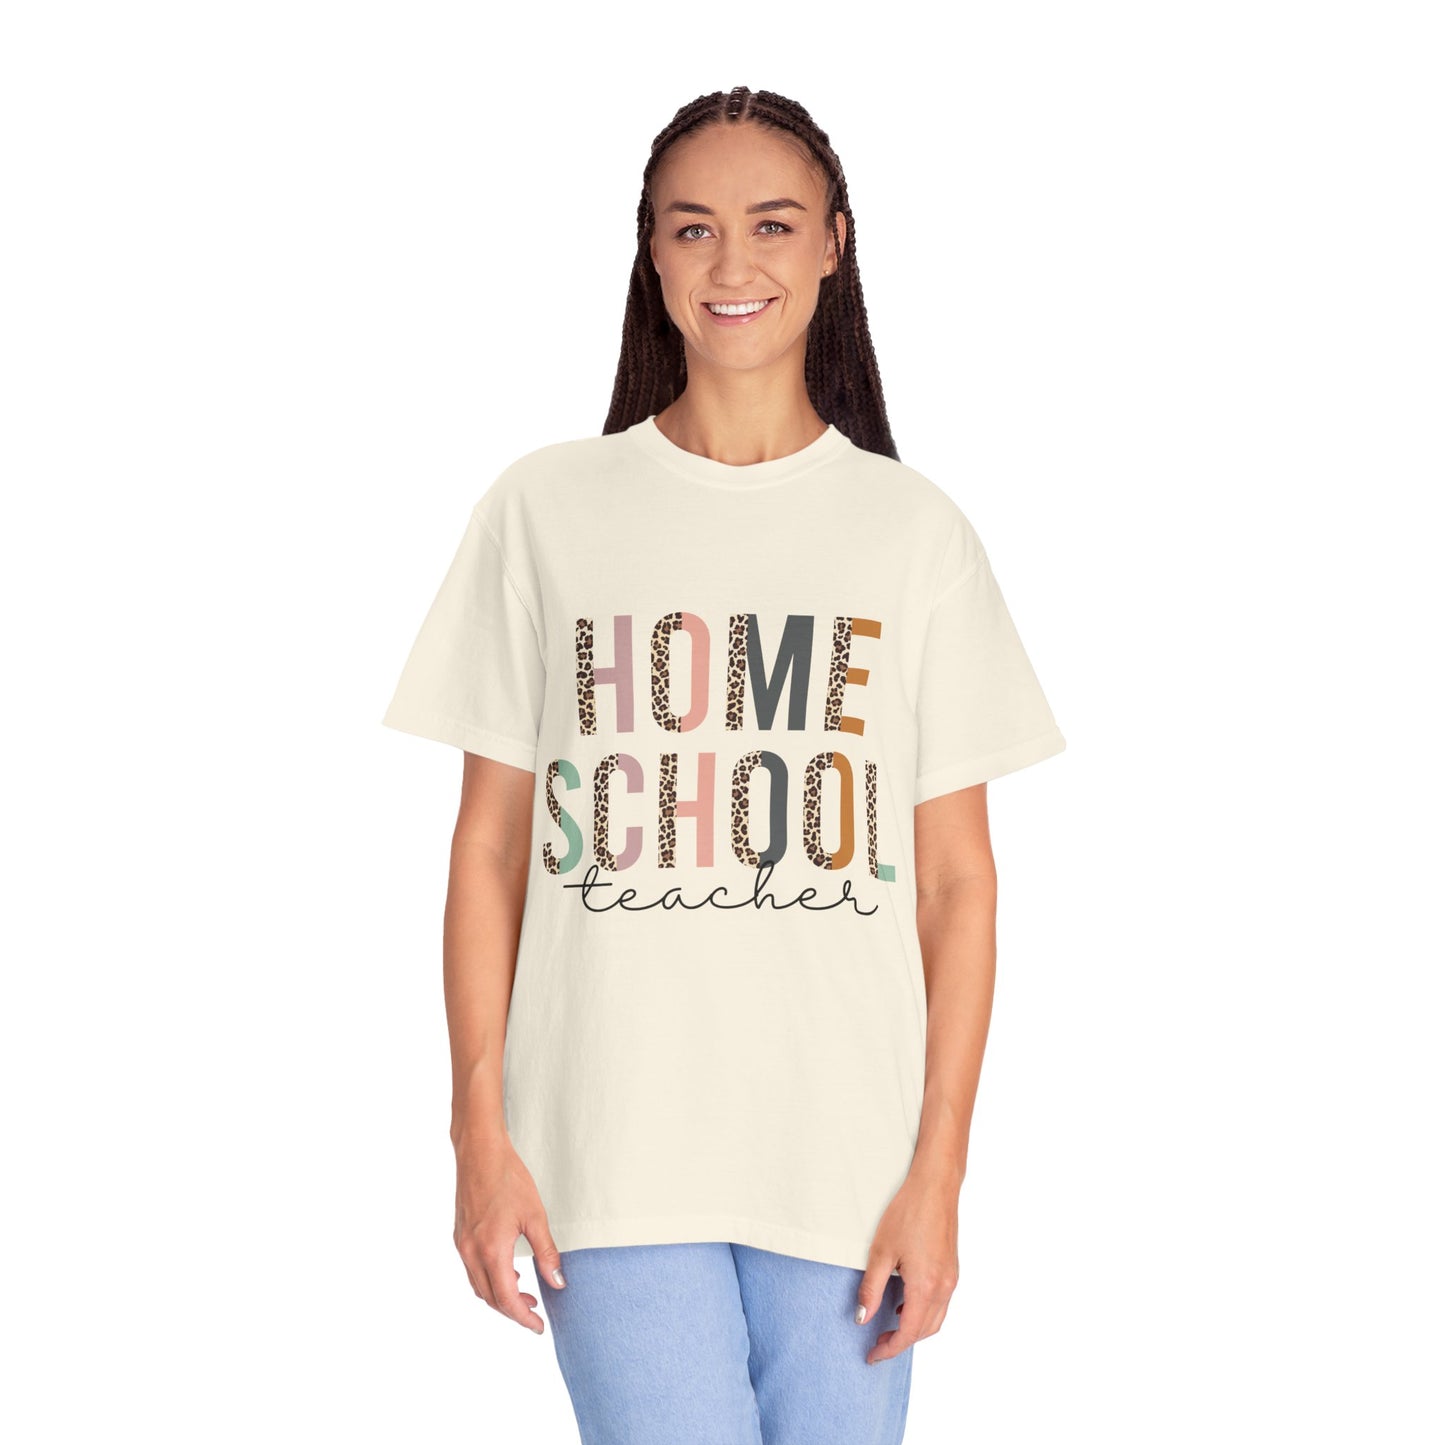 Home School Teacher Unisex Garment-Dyed T-shirt